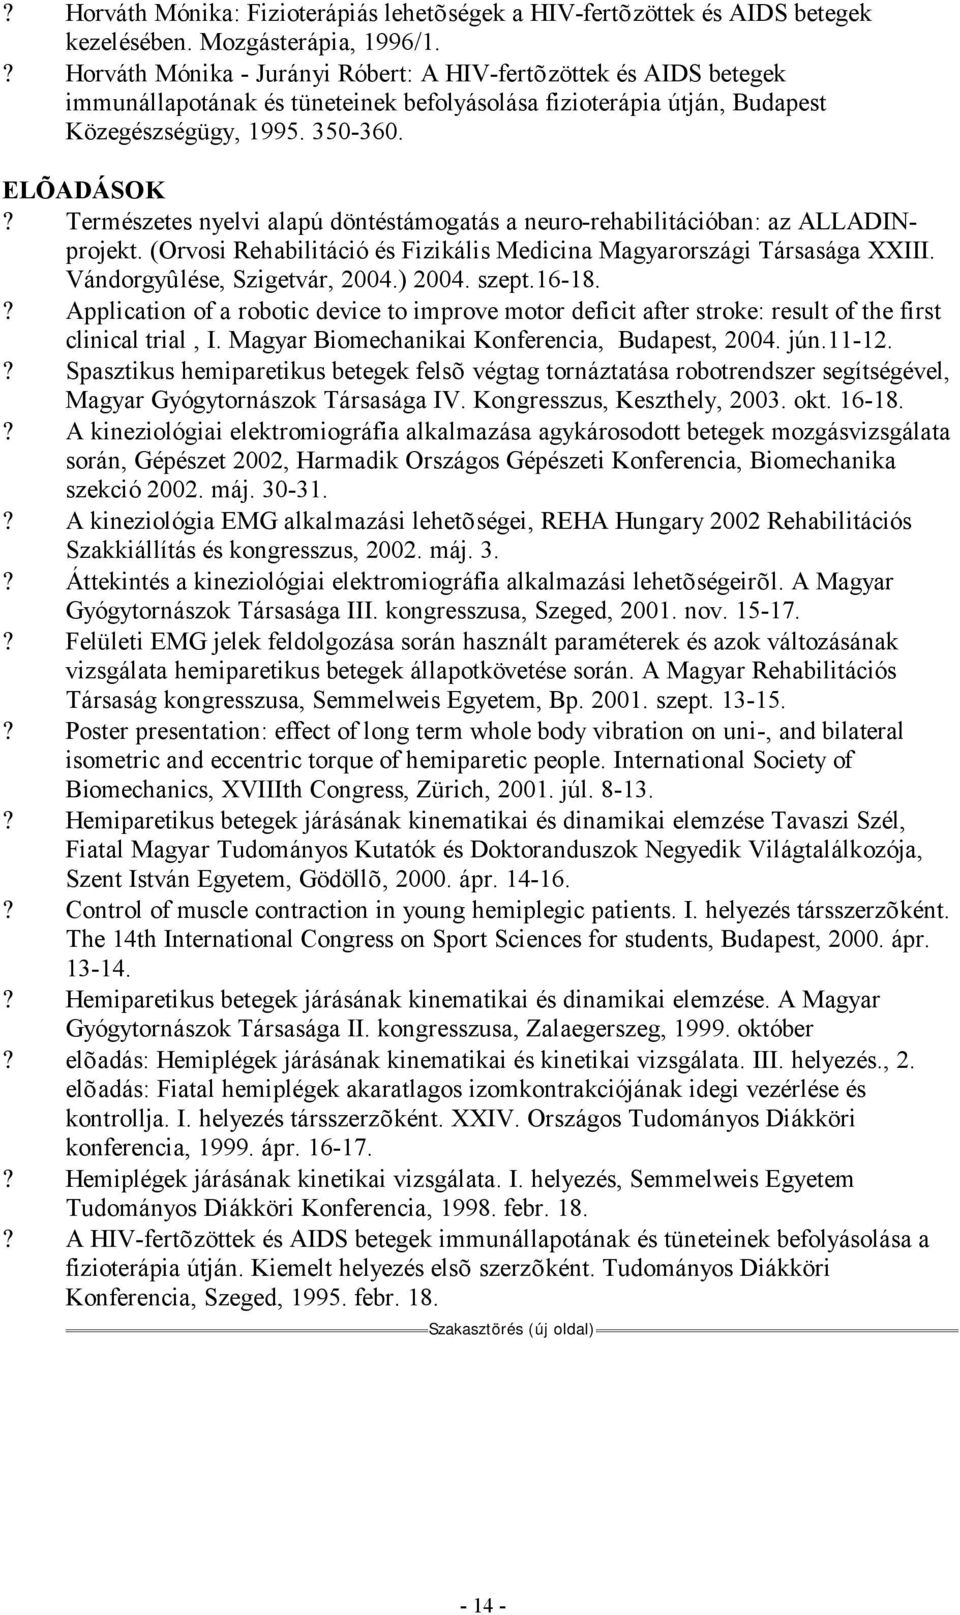 Természetes nyelvi alapú döntéstámogatás a neuro-rehabilitációban: az ALLADINprojekt. (Orvosi Rehabilitáció és Fizikális Medicina Magyarországi Társasága XXIII. Vándorgyûlése, Szigetvár, 2004.) 2004.